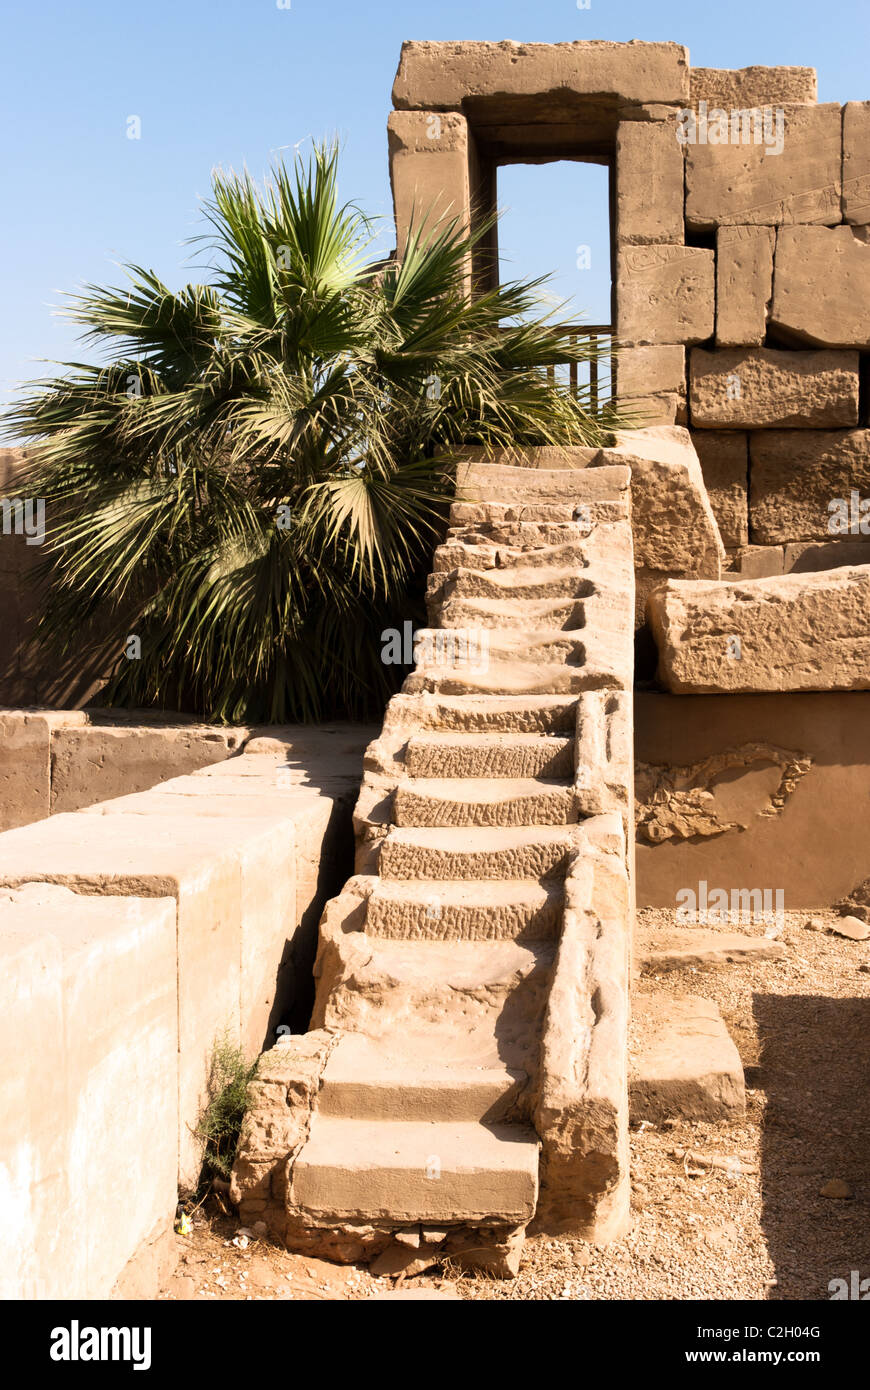 Vicino al grande Festival Hall costruita dal Faraone Tuthmoses III - Tempio di Karnak complesso - Luxor, l'Alto Egitto Foto Stock